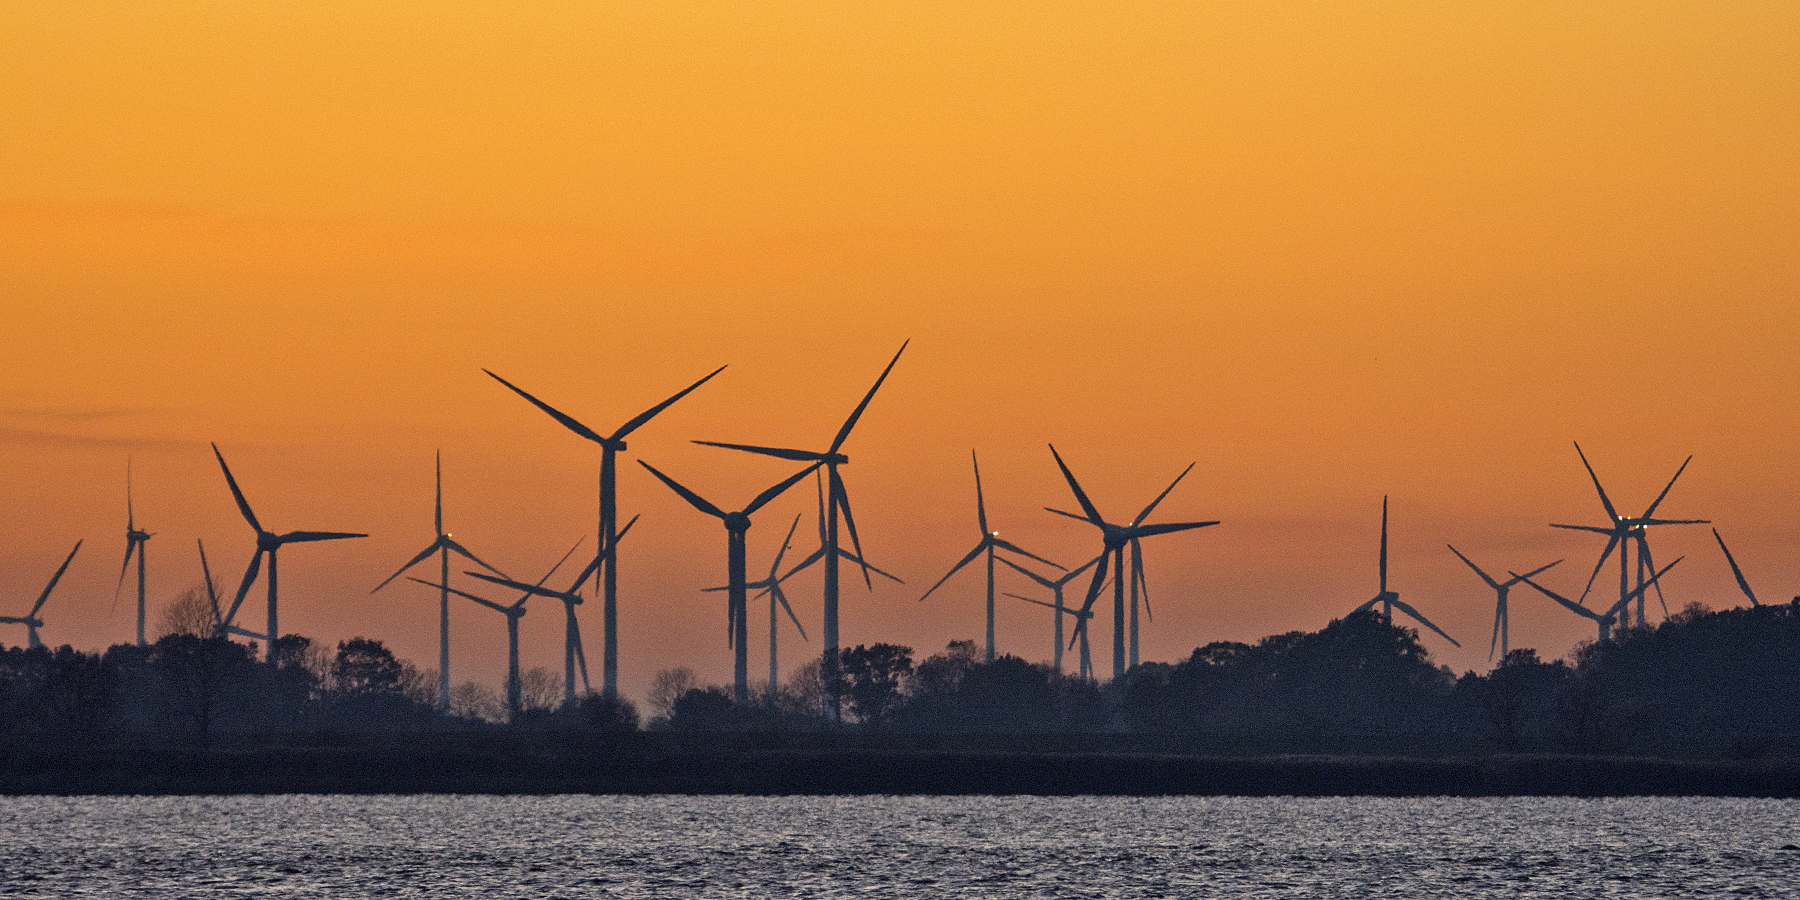 Sonne und Wind - Die Zukunft der nachhaltigen Energiegewinnung?